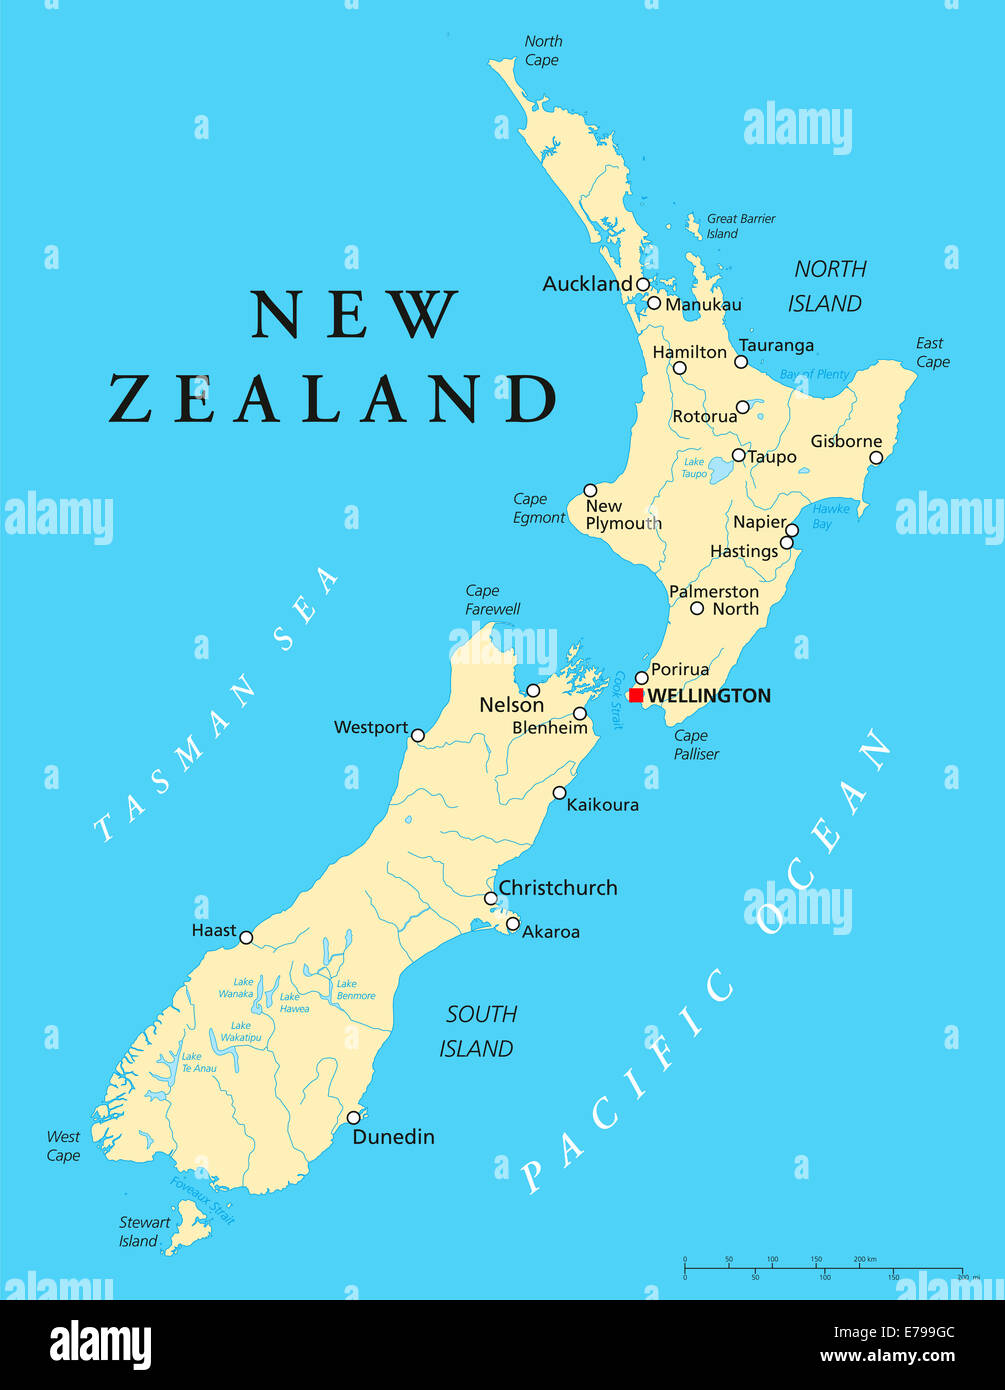 Carte Politique de la Nouvelle-Zélande avec capital Wellington, les frontières nationales, la plupart des grandes villes, rivières et lacs. L'étiquetage en anglais. Banque D'Images